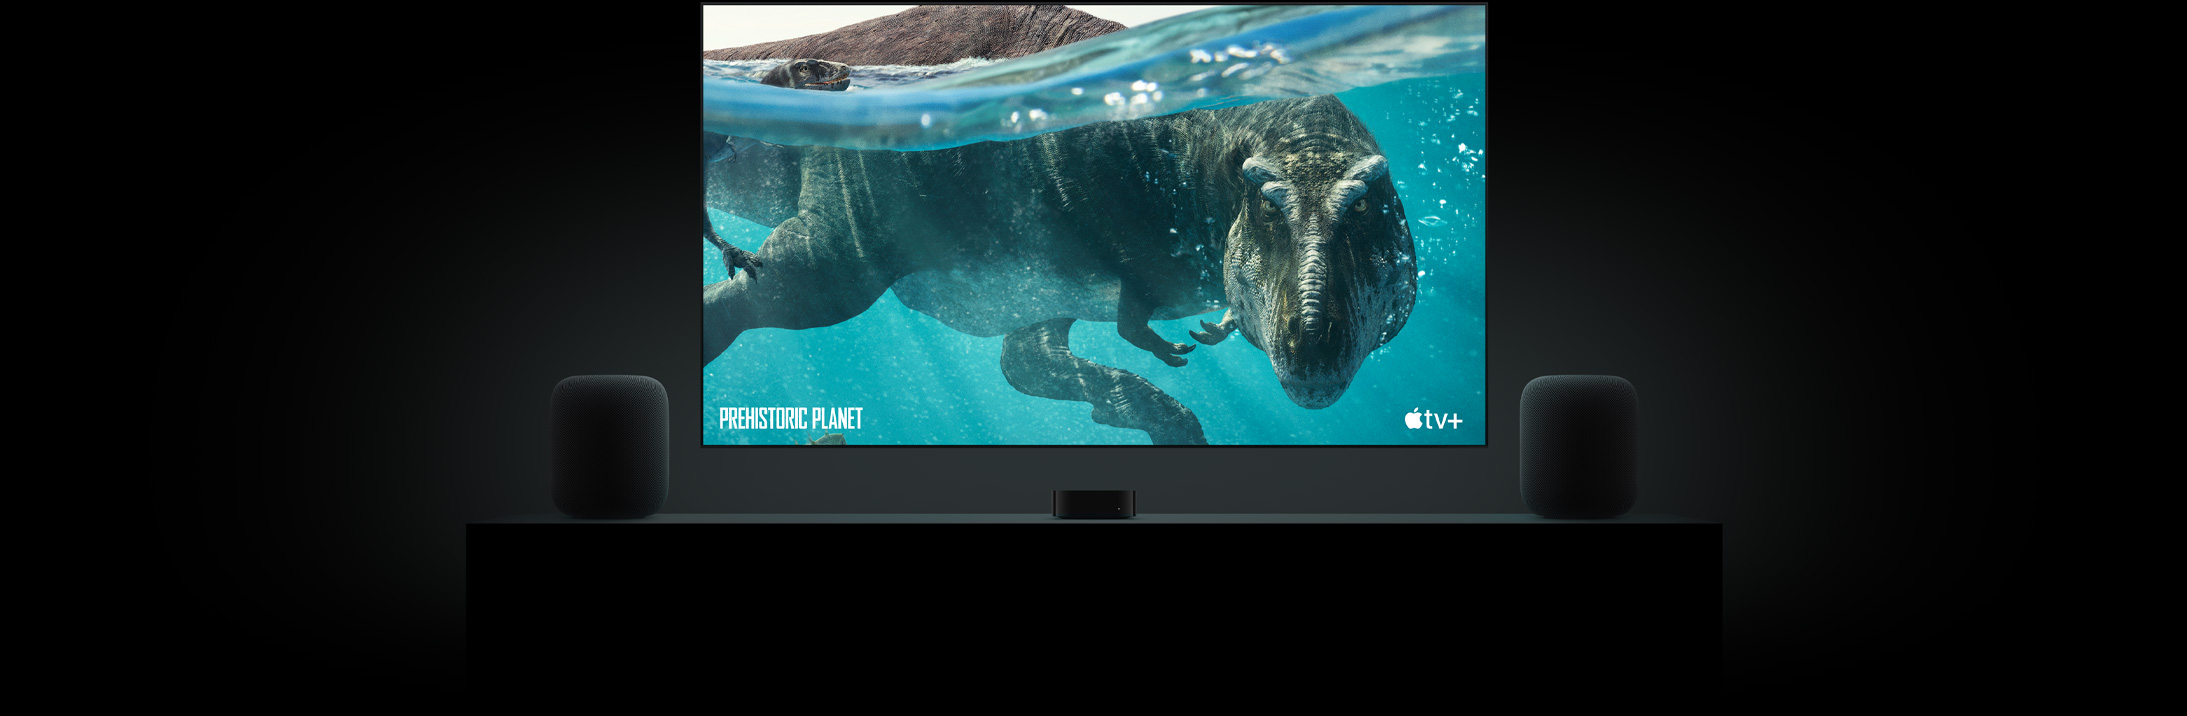 Большой телевизор с плоским экраном, показывающий яркое изображение динозавра с доисторической планеты.  Телевизор подвешен над Apple TV и обрамлен двумя динамиками HomePod, расположенными на консоли в гостиной.